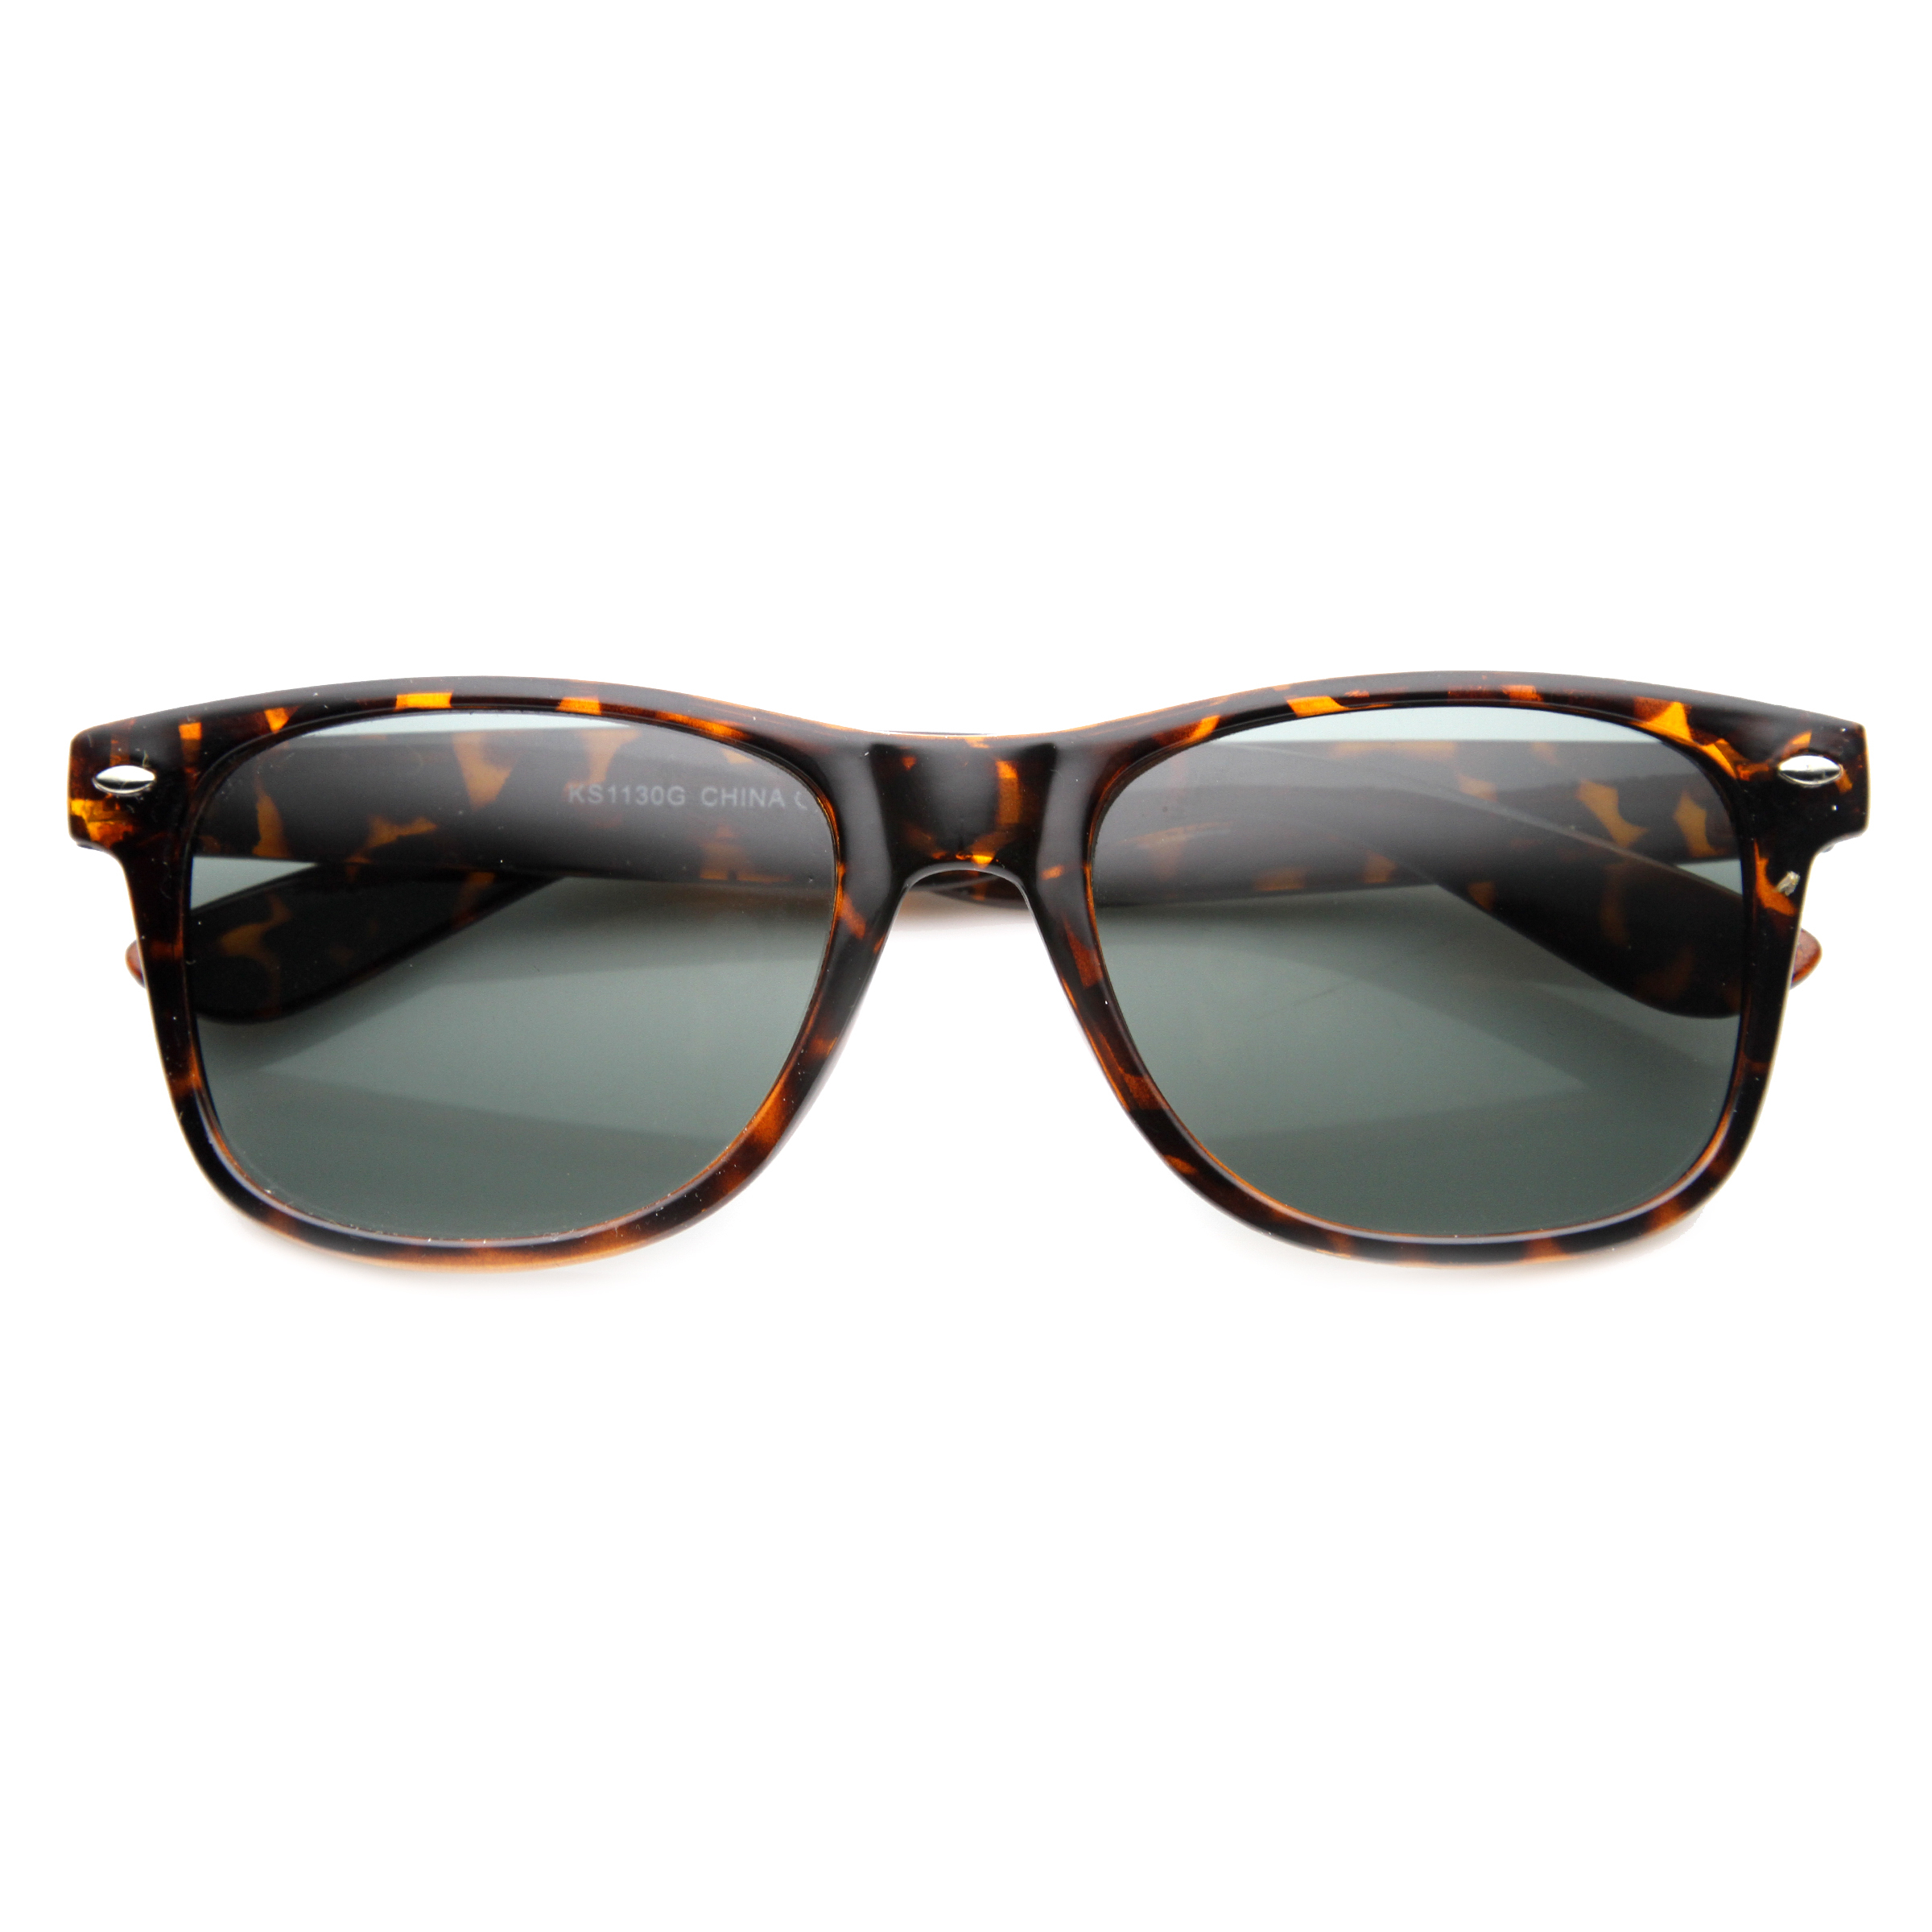 Classic 80s Retro Large Classic Horned Rim Style Sunglasses Eyewear - 8452 - Black / Polarized Lens